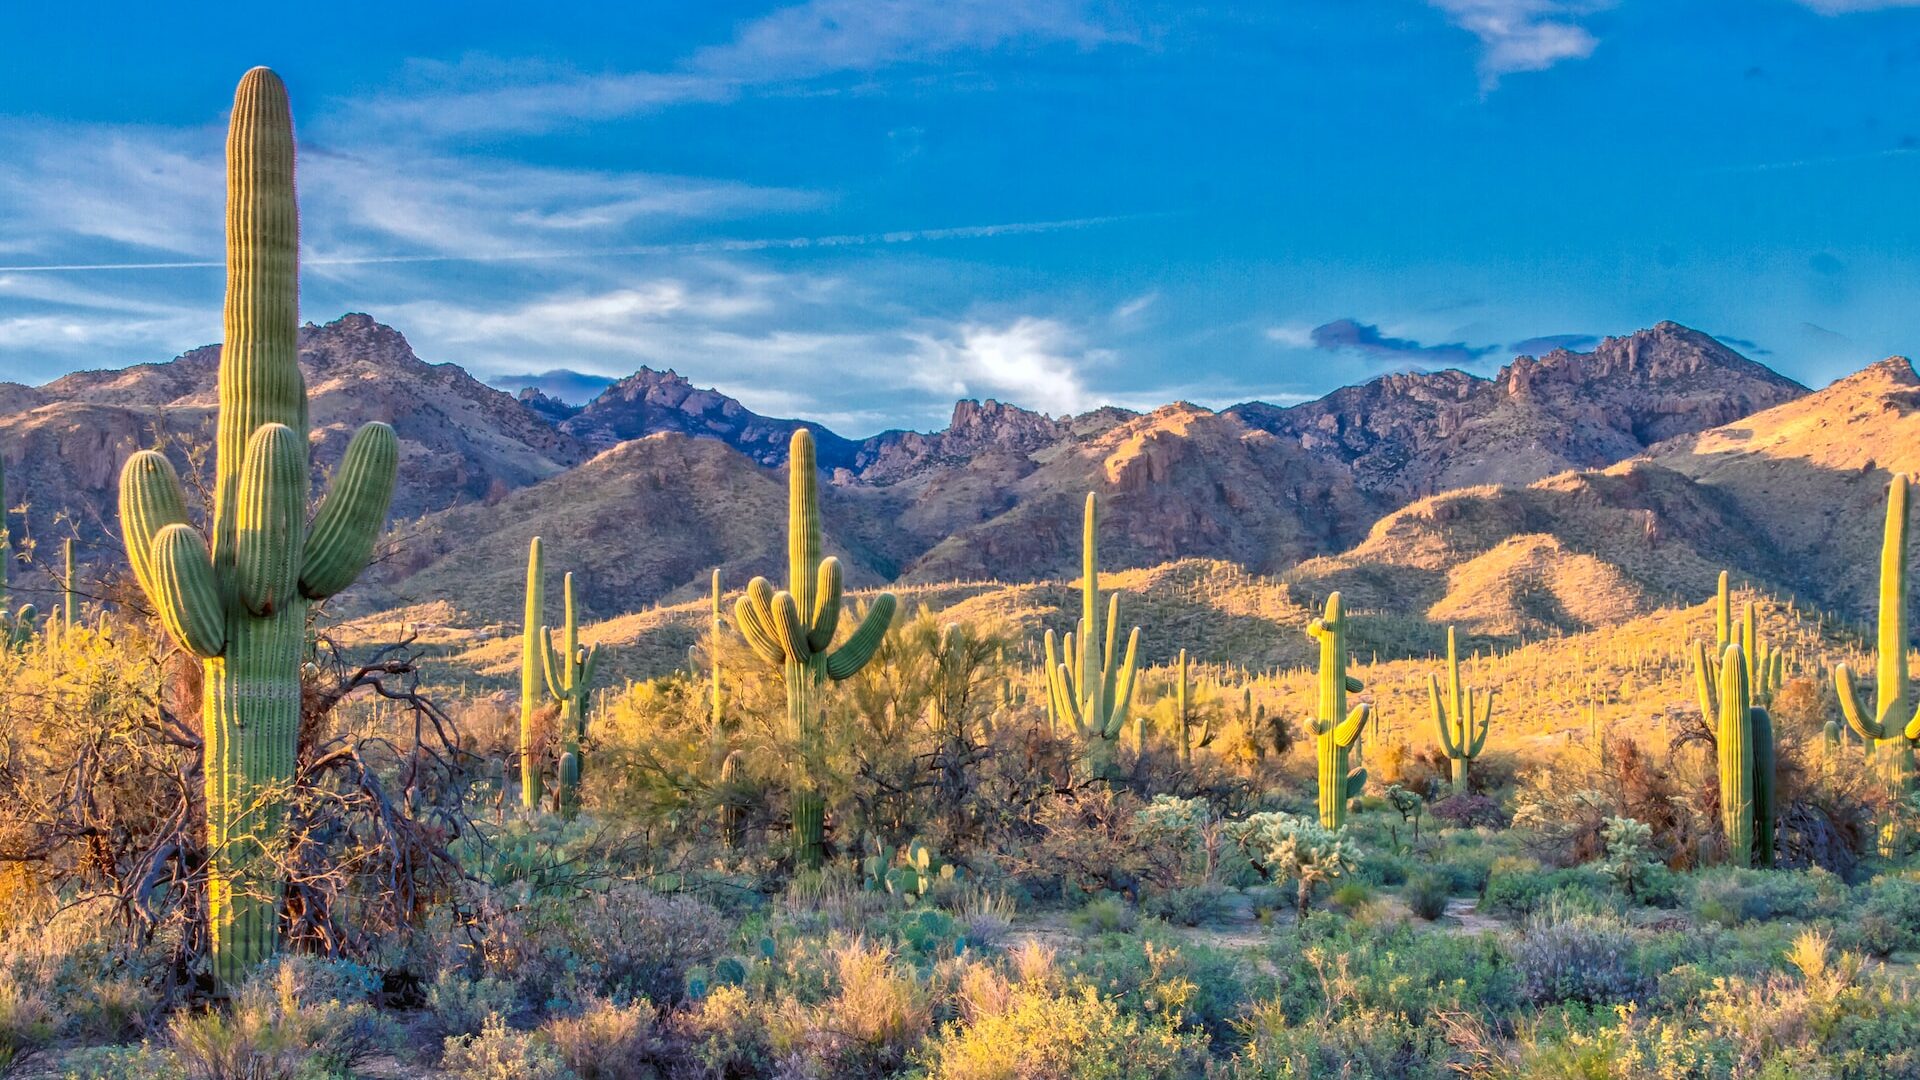 Cactuses in the desert